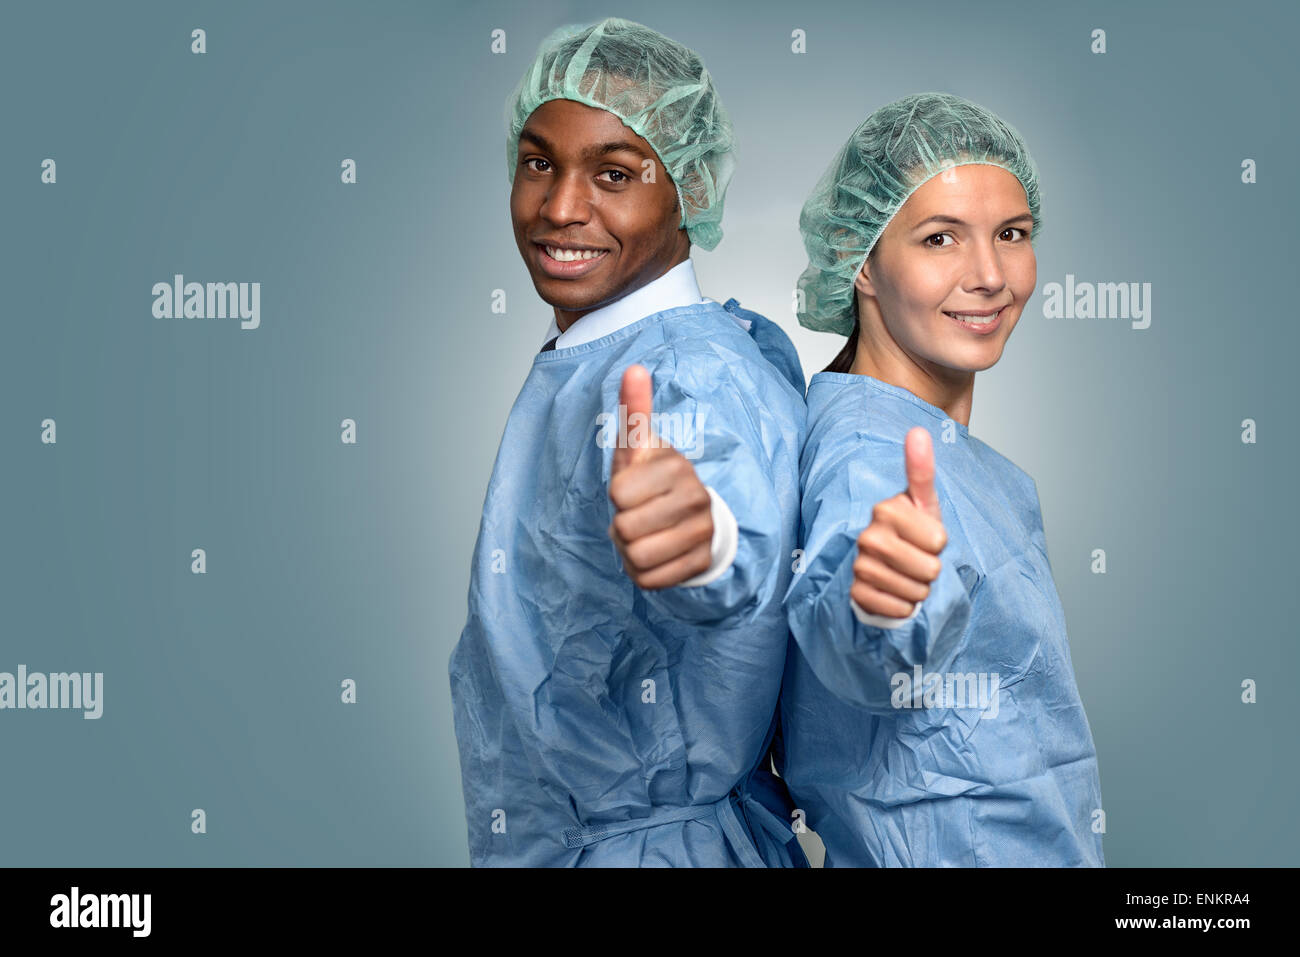 Hübscher junger afrikanischer Arzt oder Krankenpfleger in Scrubs und Sterilität Mütze schaut direkt in die Kamera über einen grauen Hintergrund, Stockfoto